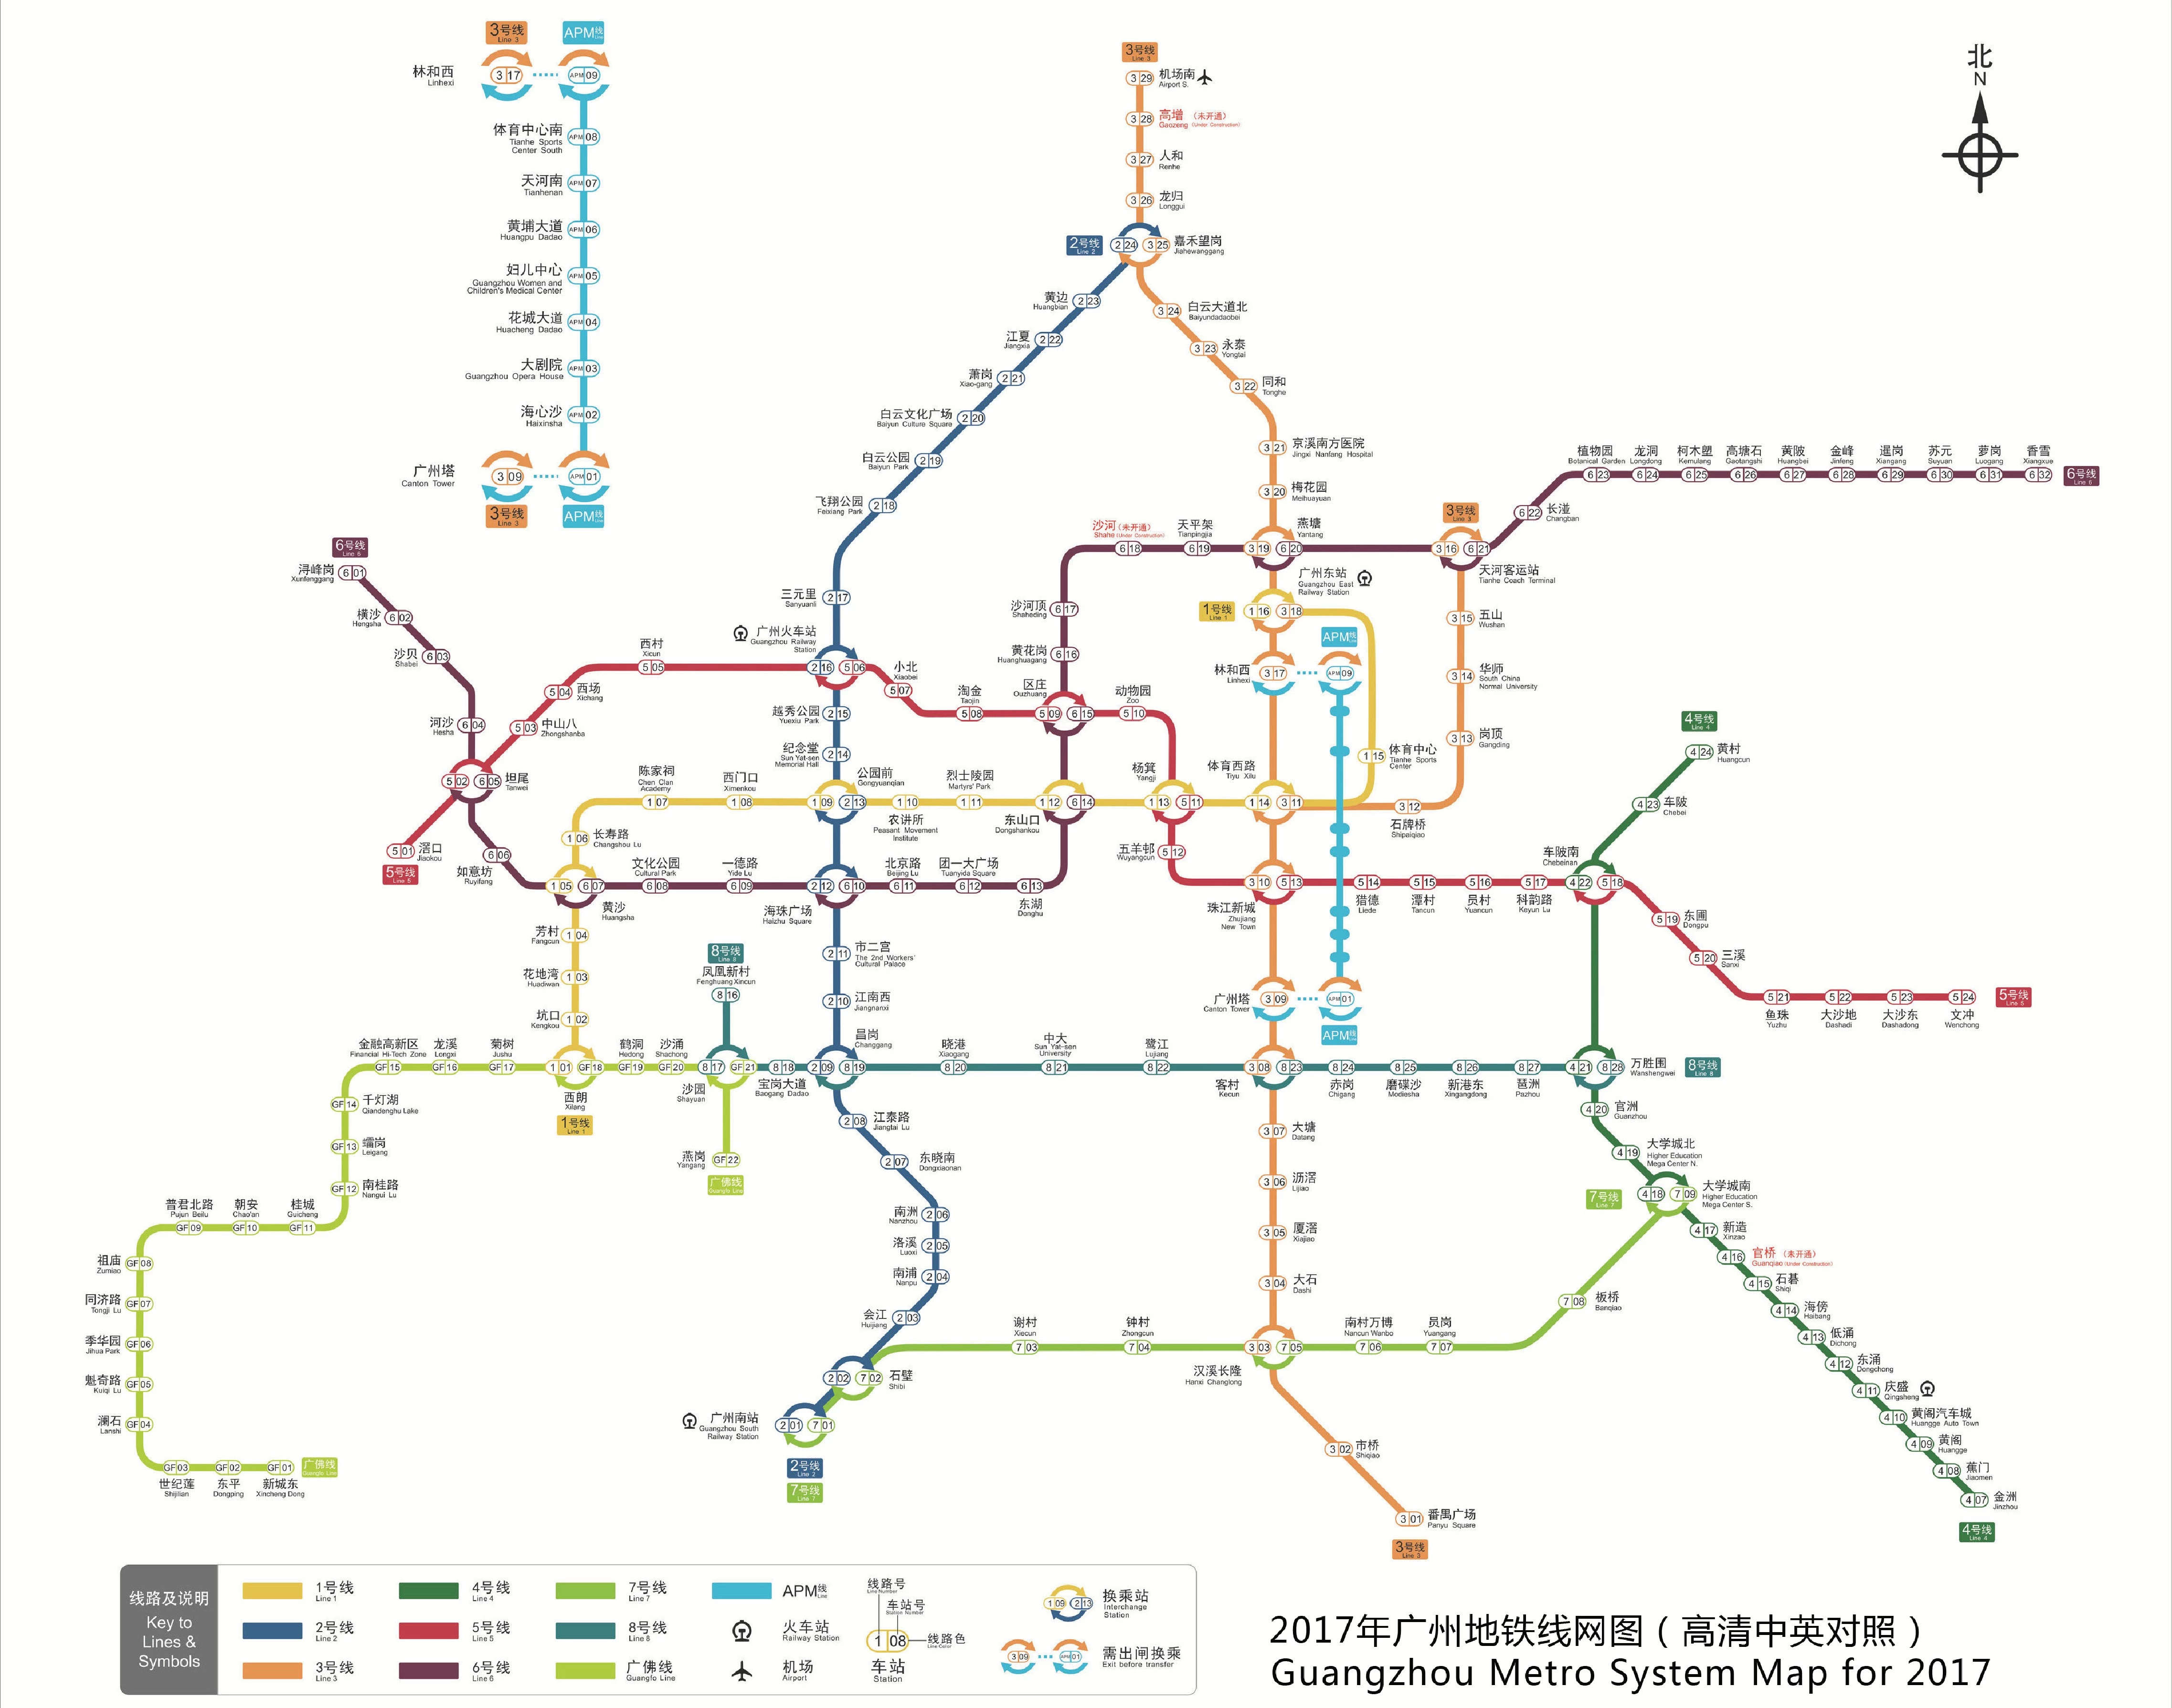 2017年广州地铁线路图(中英对照高清版)